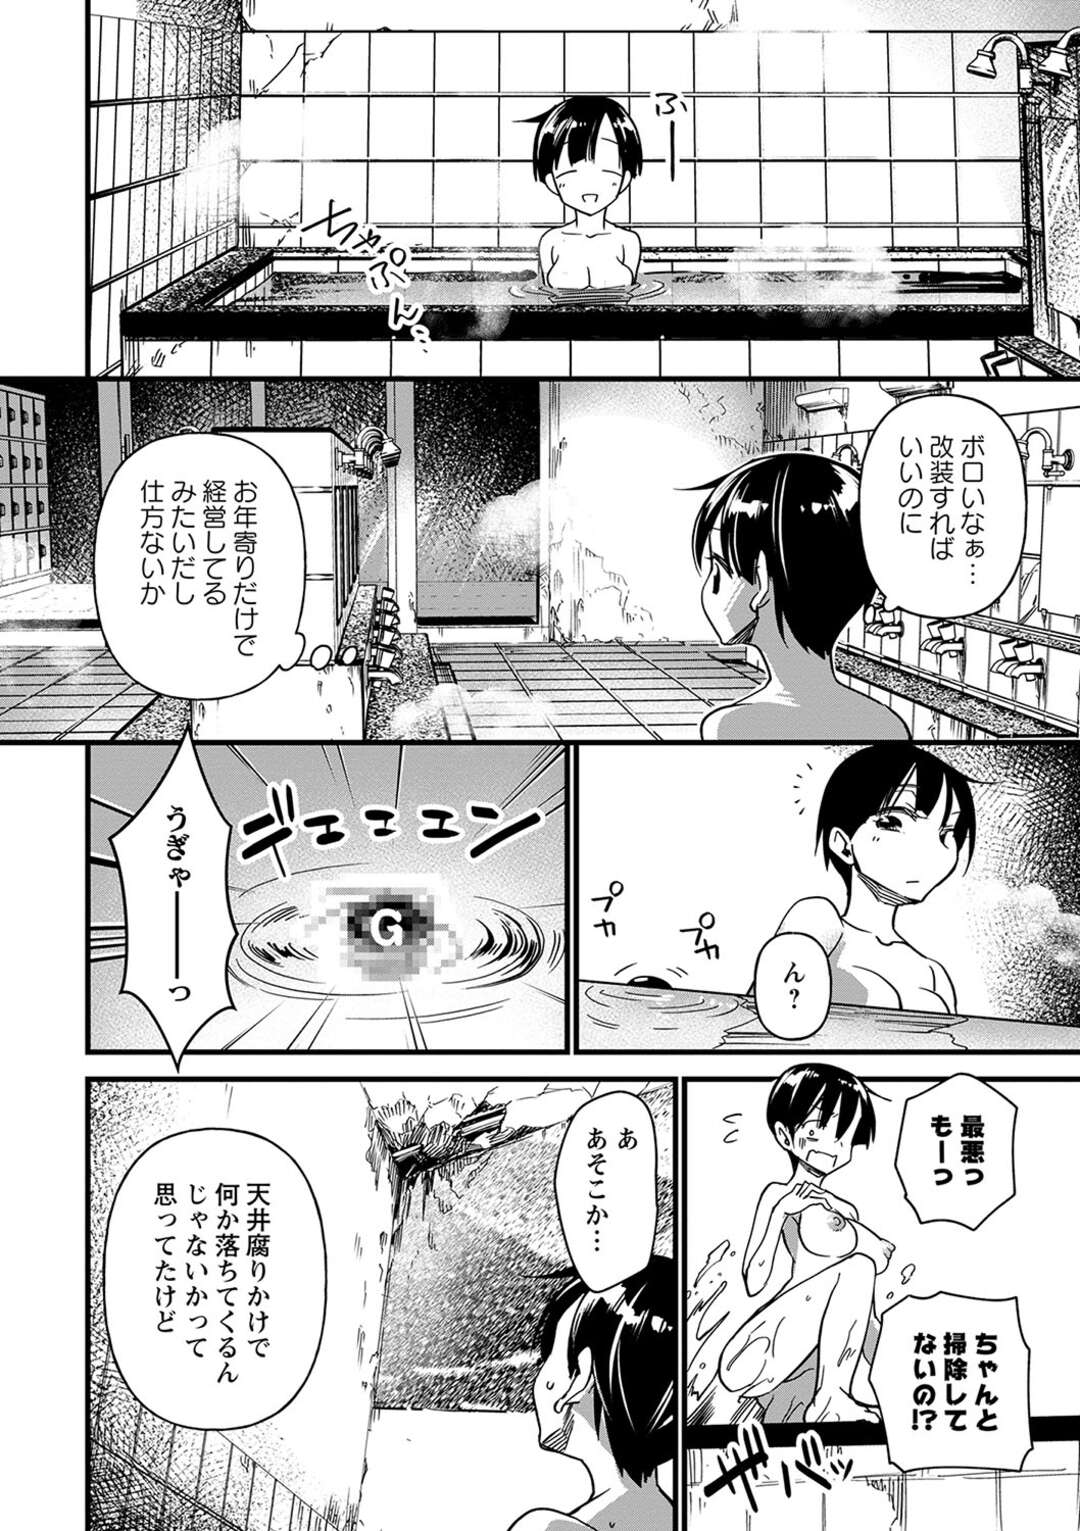 【エロ漫画】ボロ温泉でいつも入浴するエロカワお姉さんがボイラー室で音が気になり覗くとキモデブに捕まり強姦されて悶絶…【松本痙】